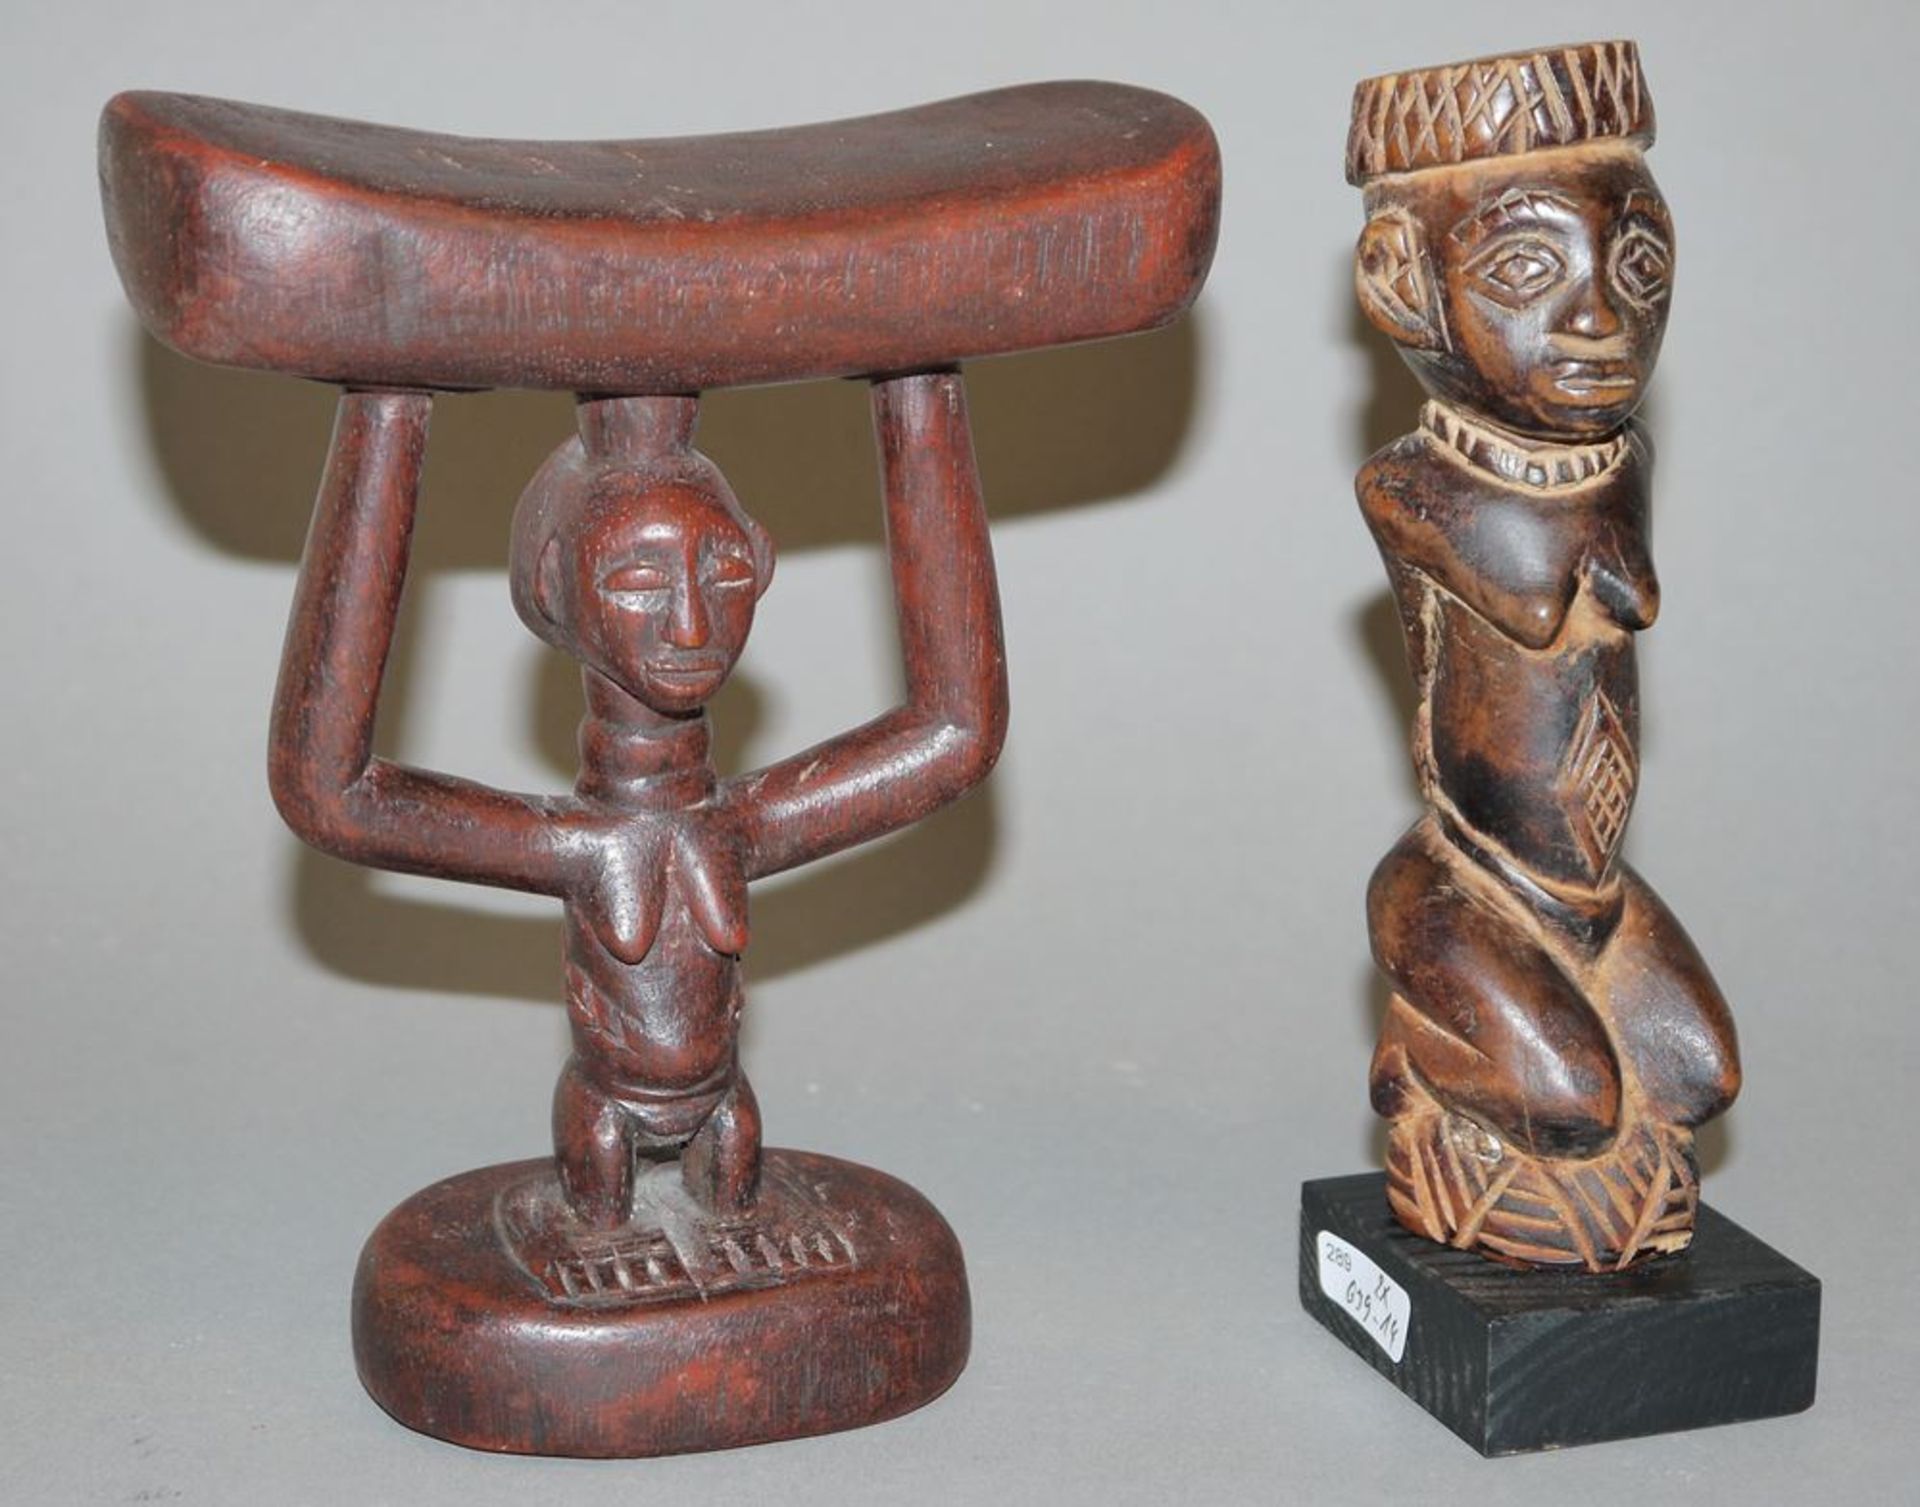 Kopfstütze der Luba und Sklavenfigur der Yombe, Kongo